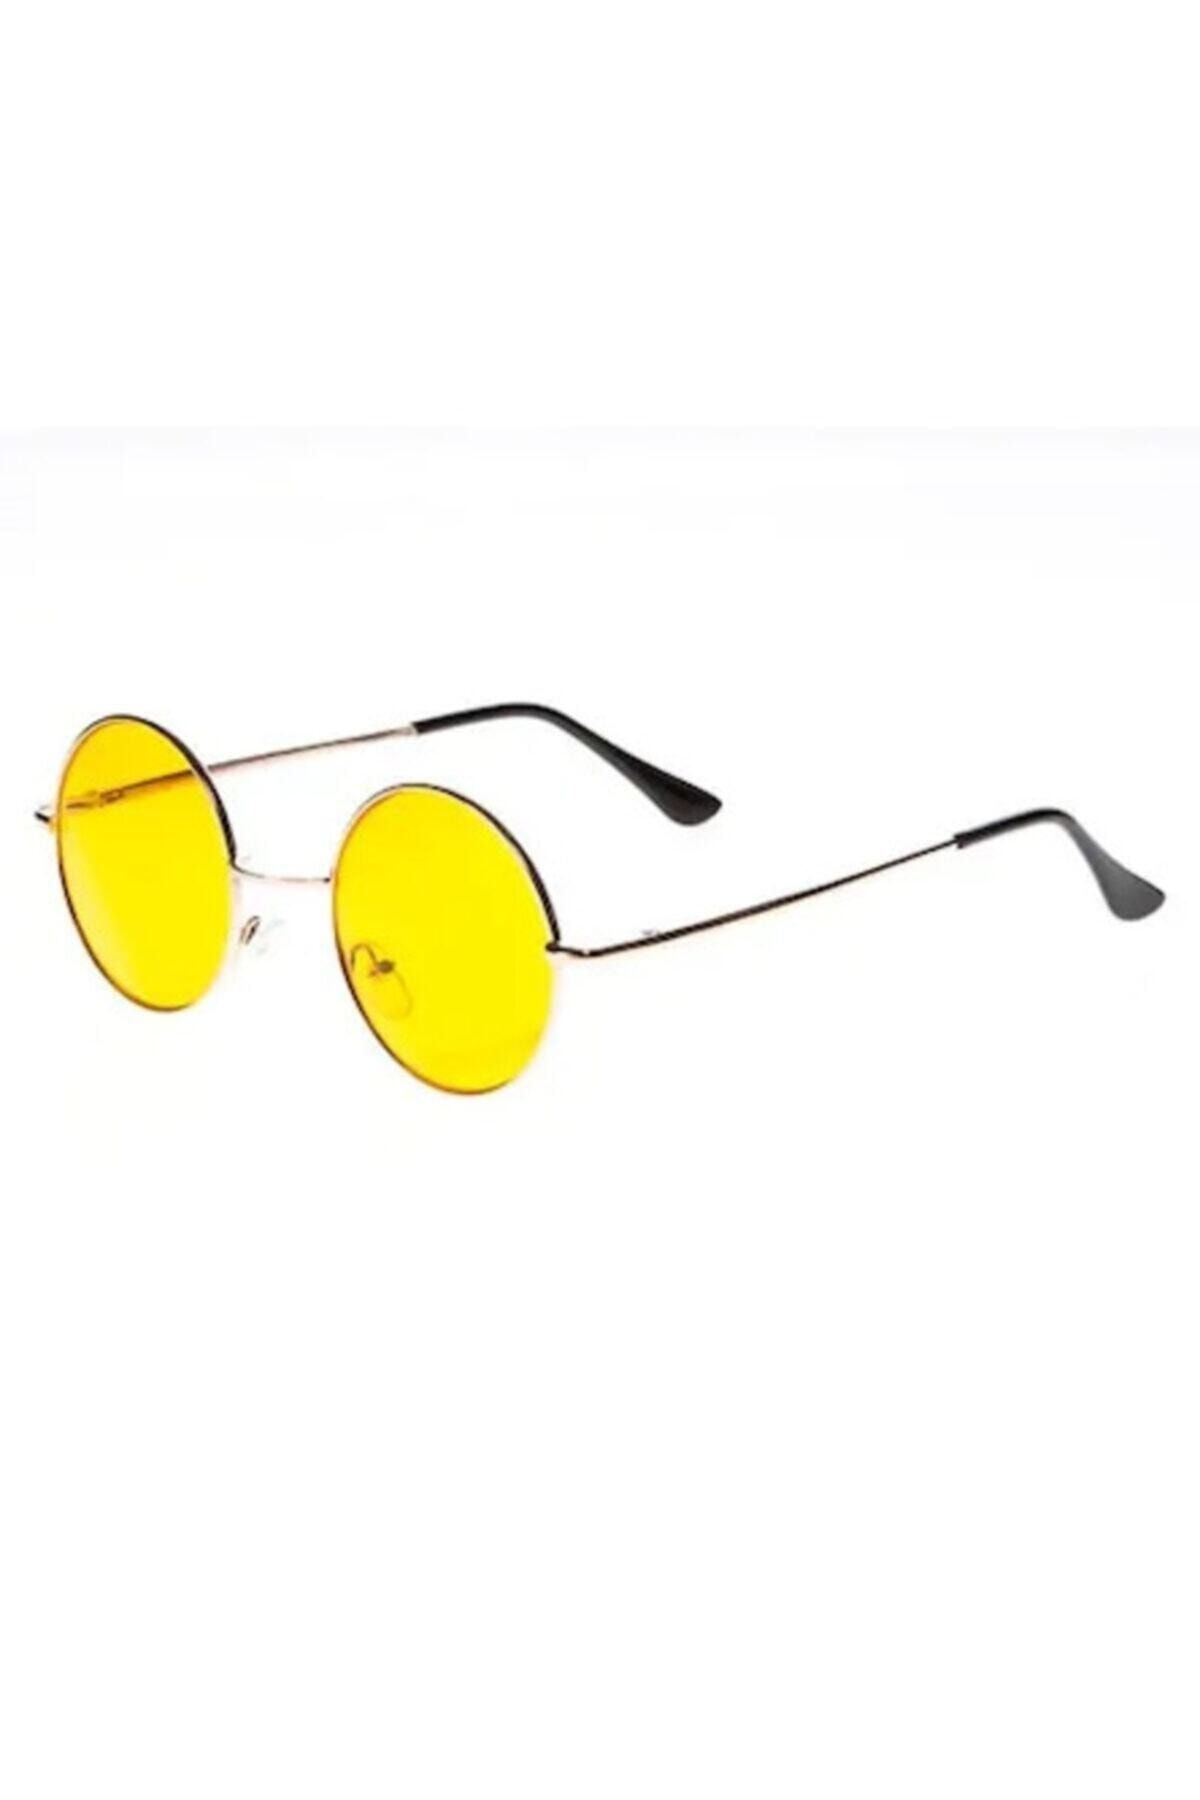 MeZaMe John Lennon Güneş Gözlüğü Yuvarlak Sarı Camlı